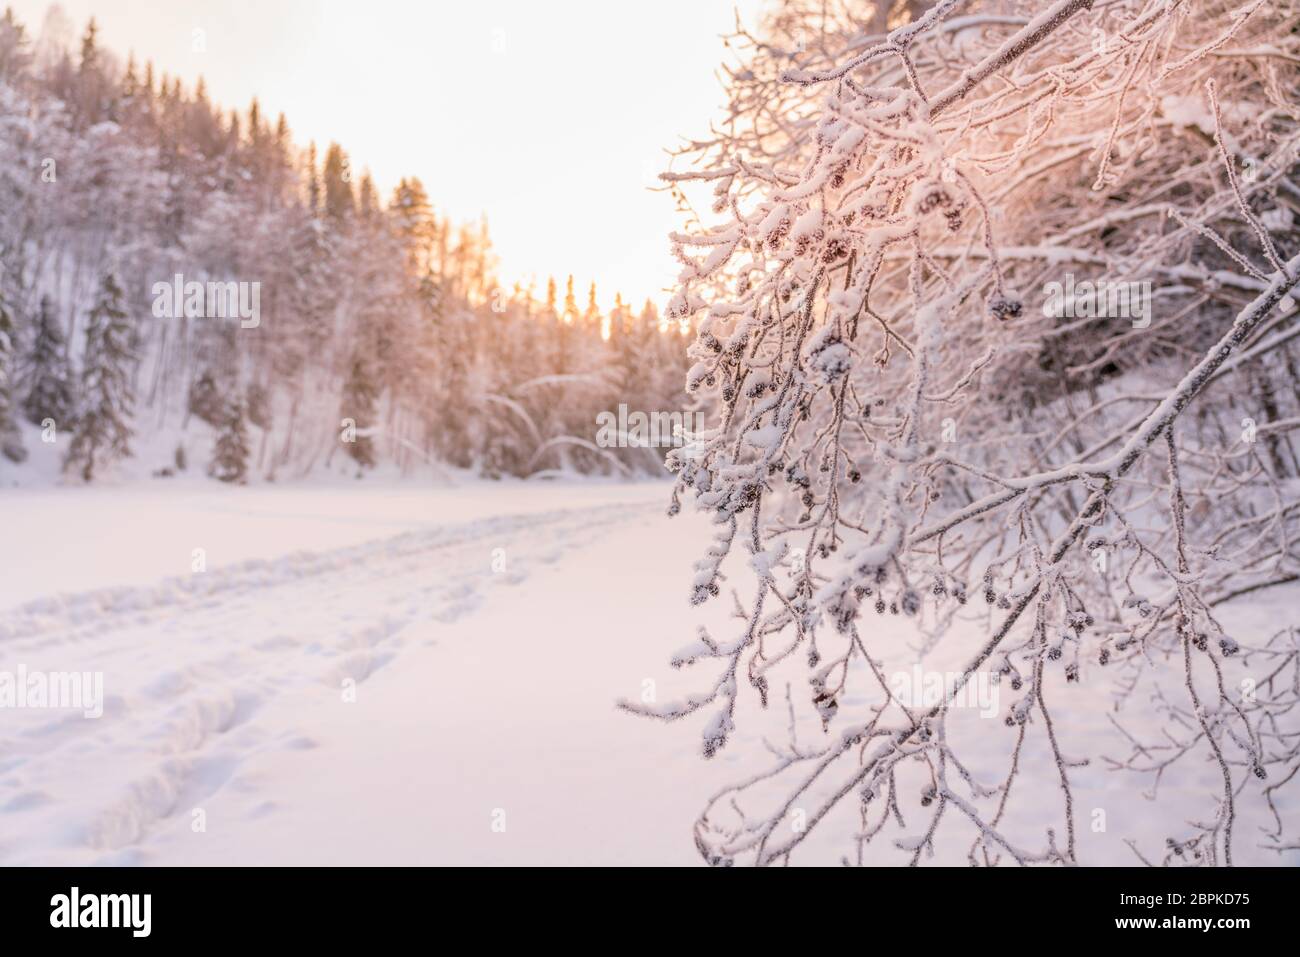 Beaucoup de givre sur des branches de rovanberry totalement congelées mises en évidence par la lumière de coucher de soleil rose, jour très froid, forêt typique dans le nord de la Suède Banque D'Images